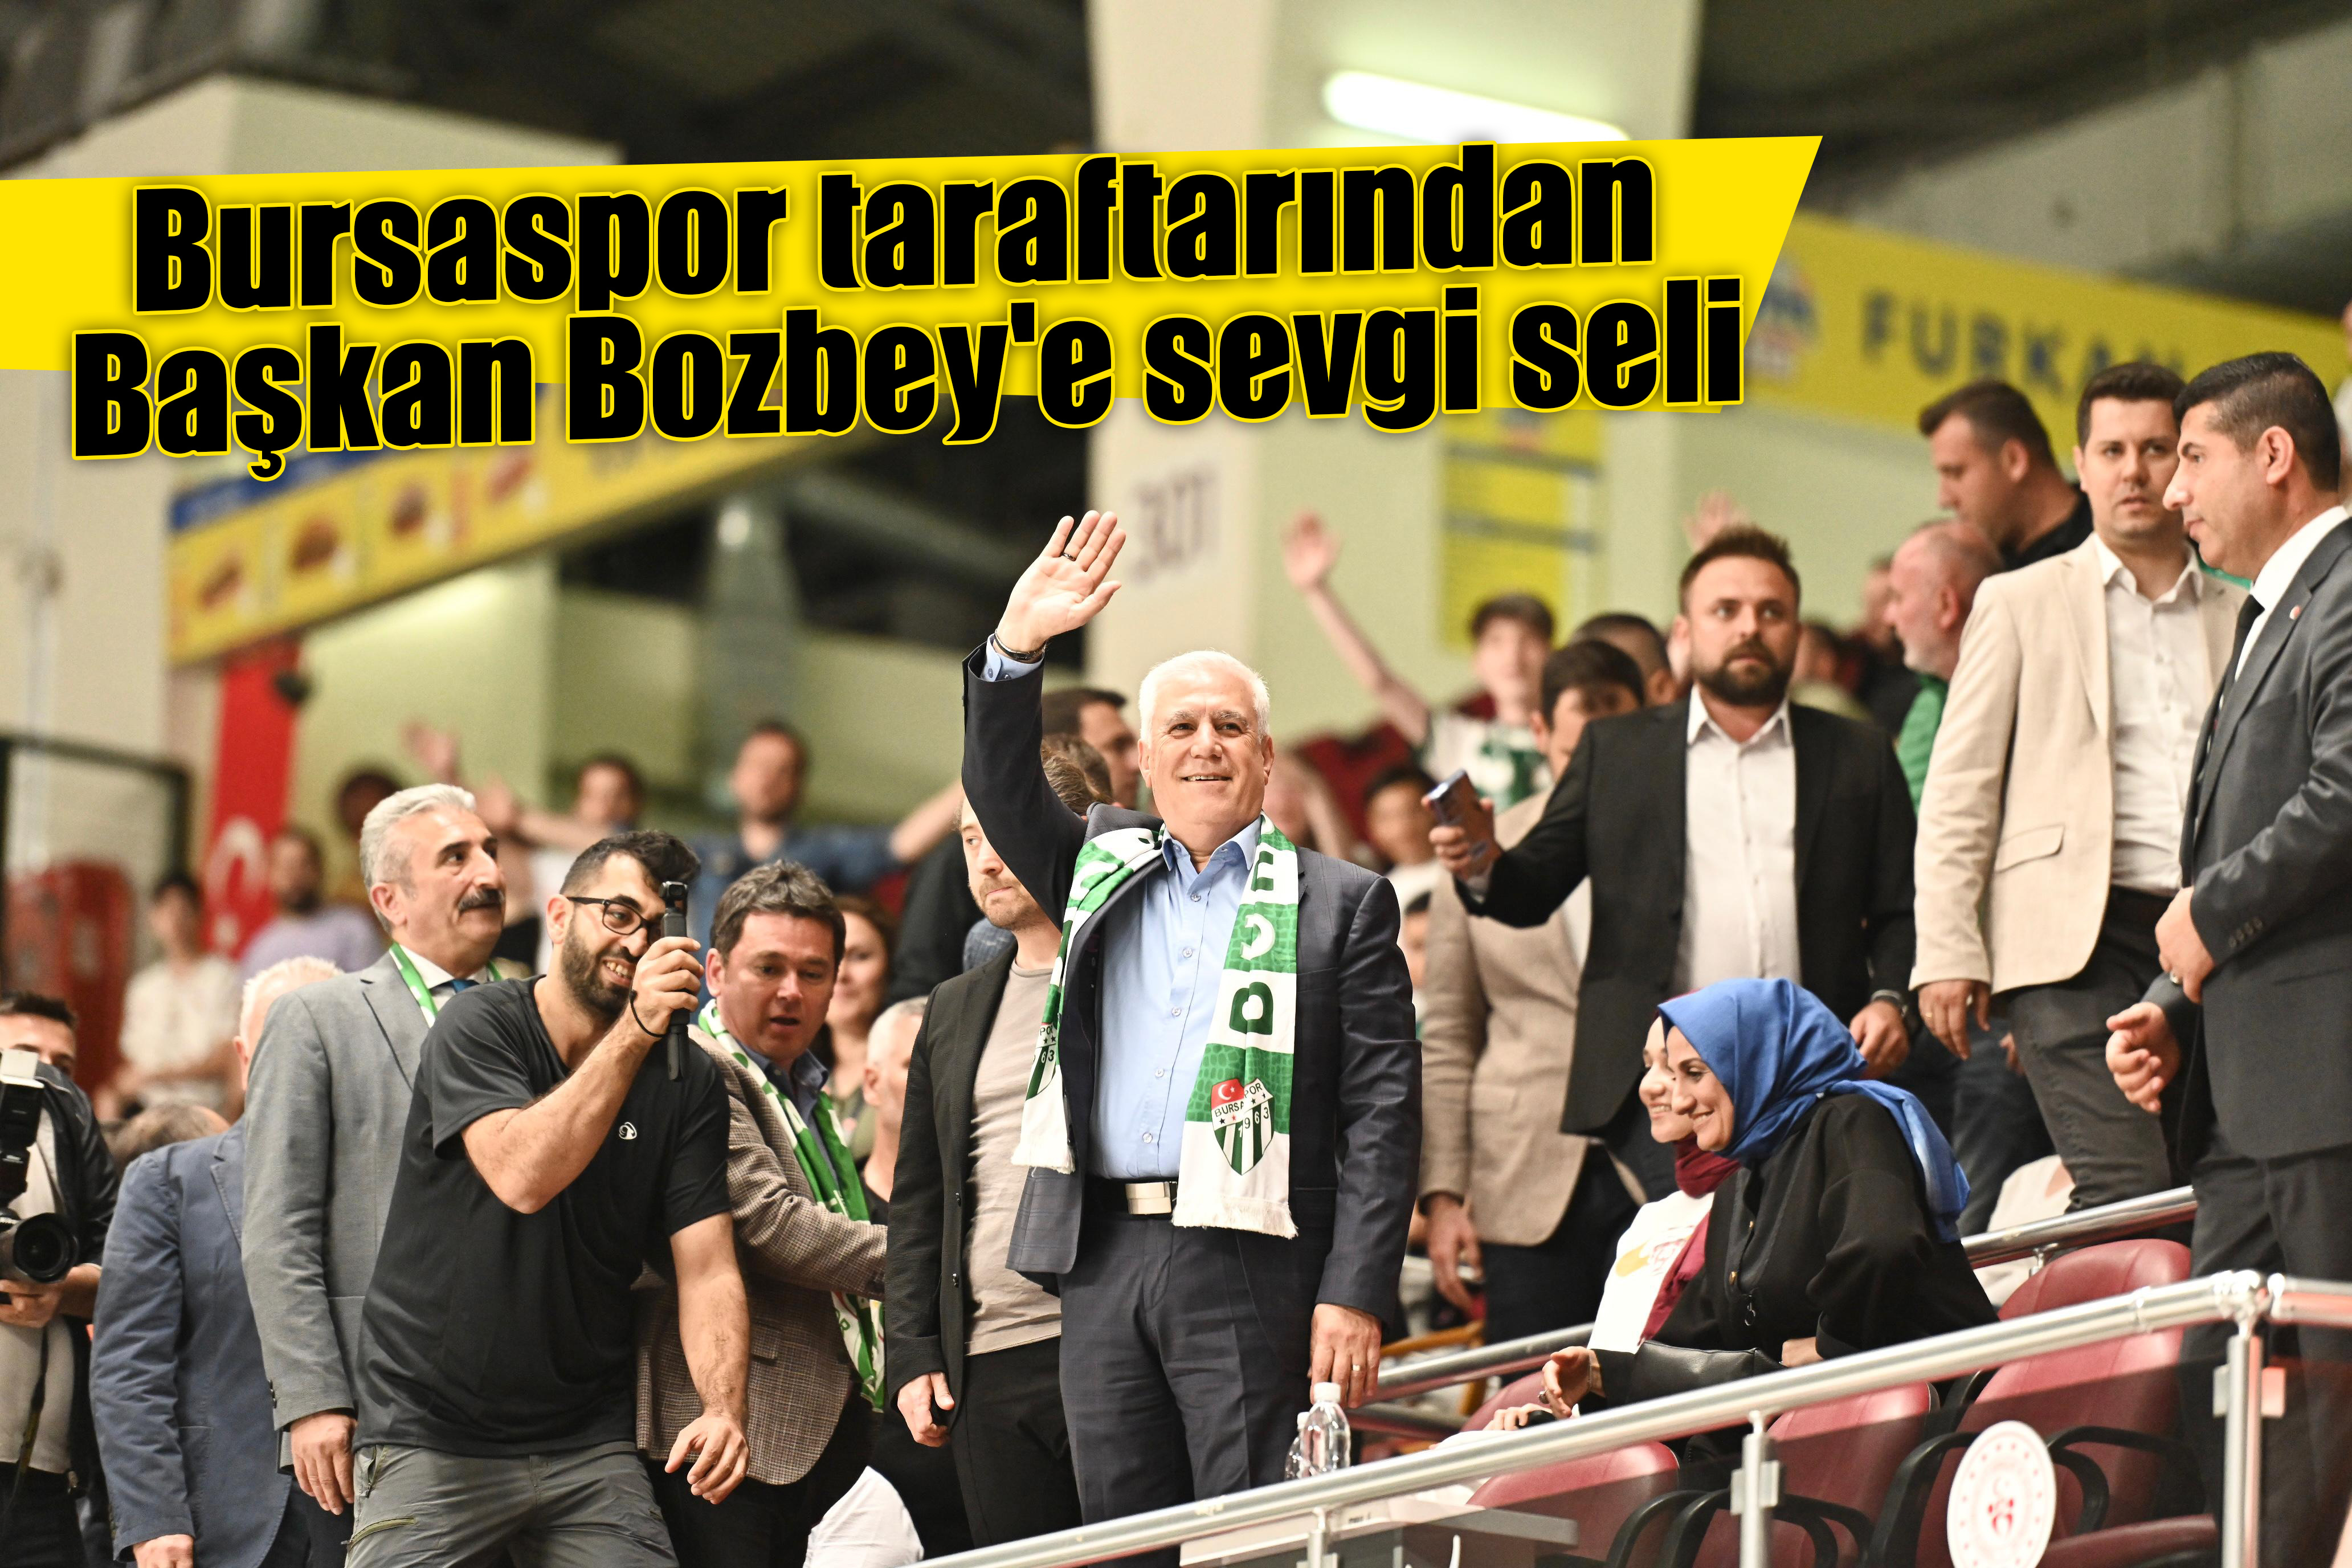 Bursaspor taraftarından Başkan Bozbey'e sevgi seli